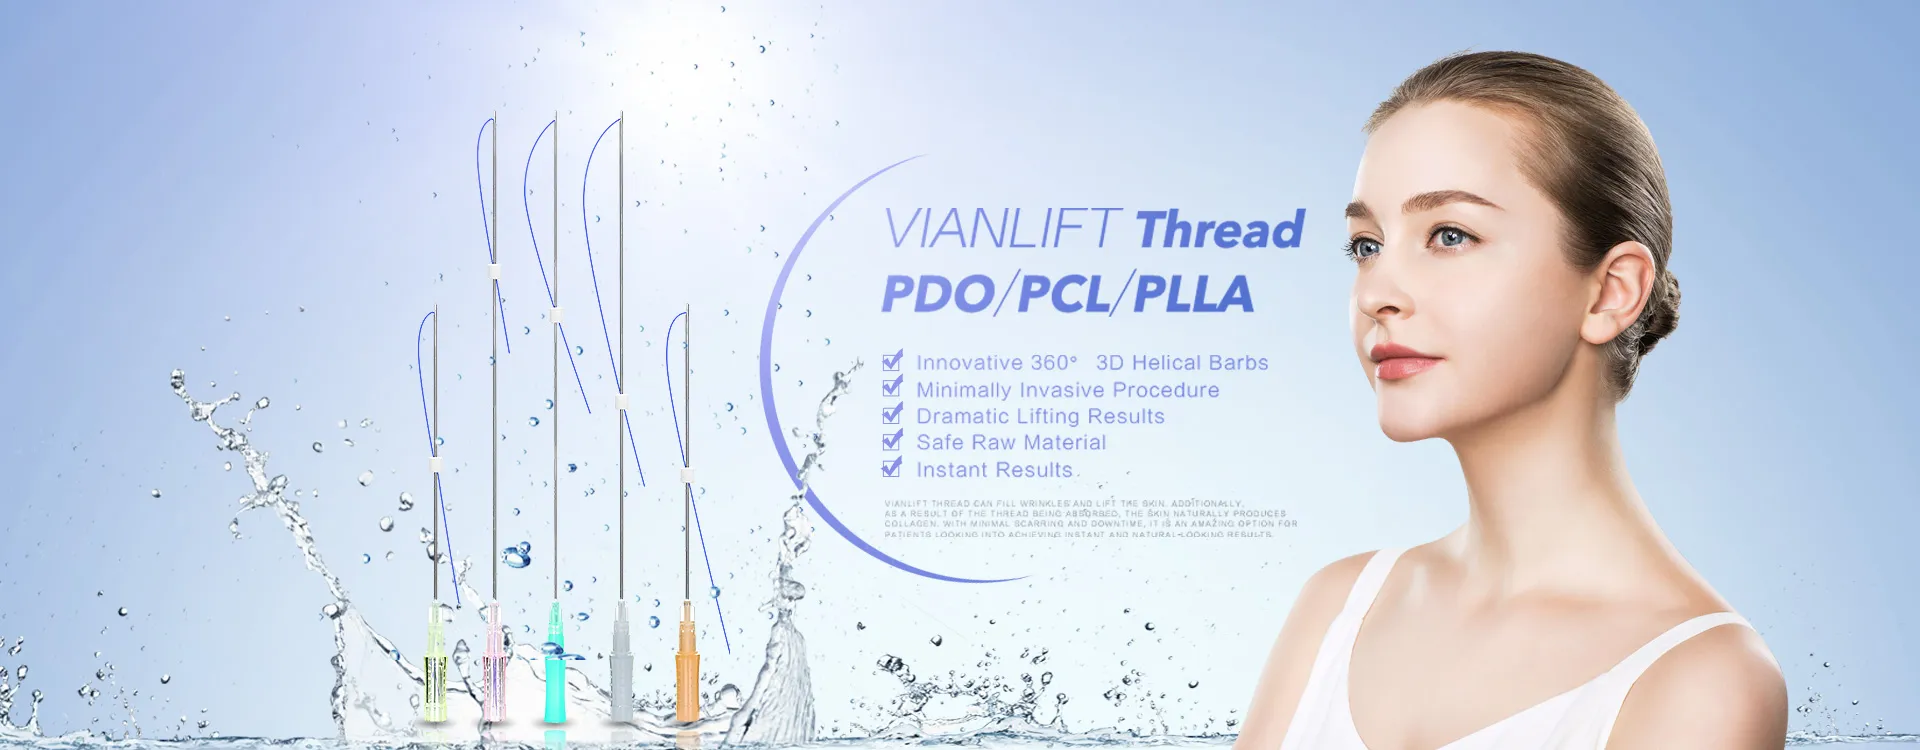 Filetage VIANLIFT PDO / PCL / PLLA